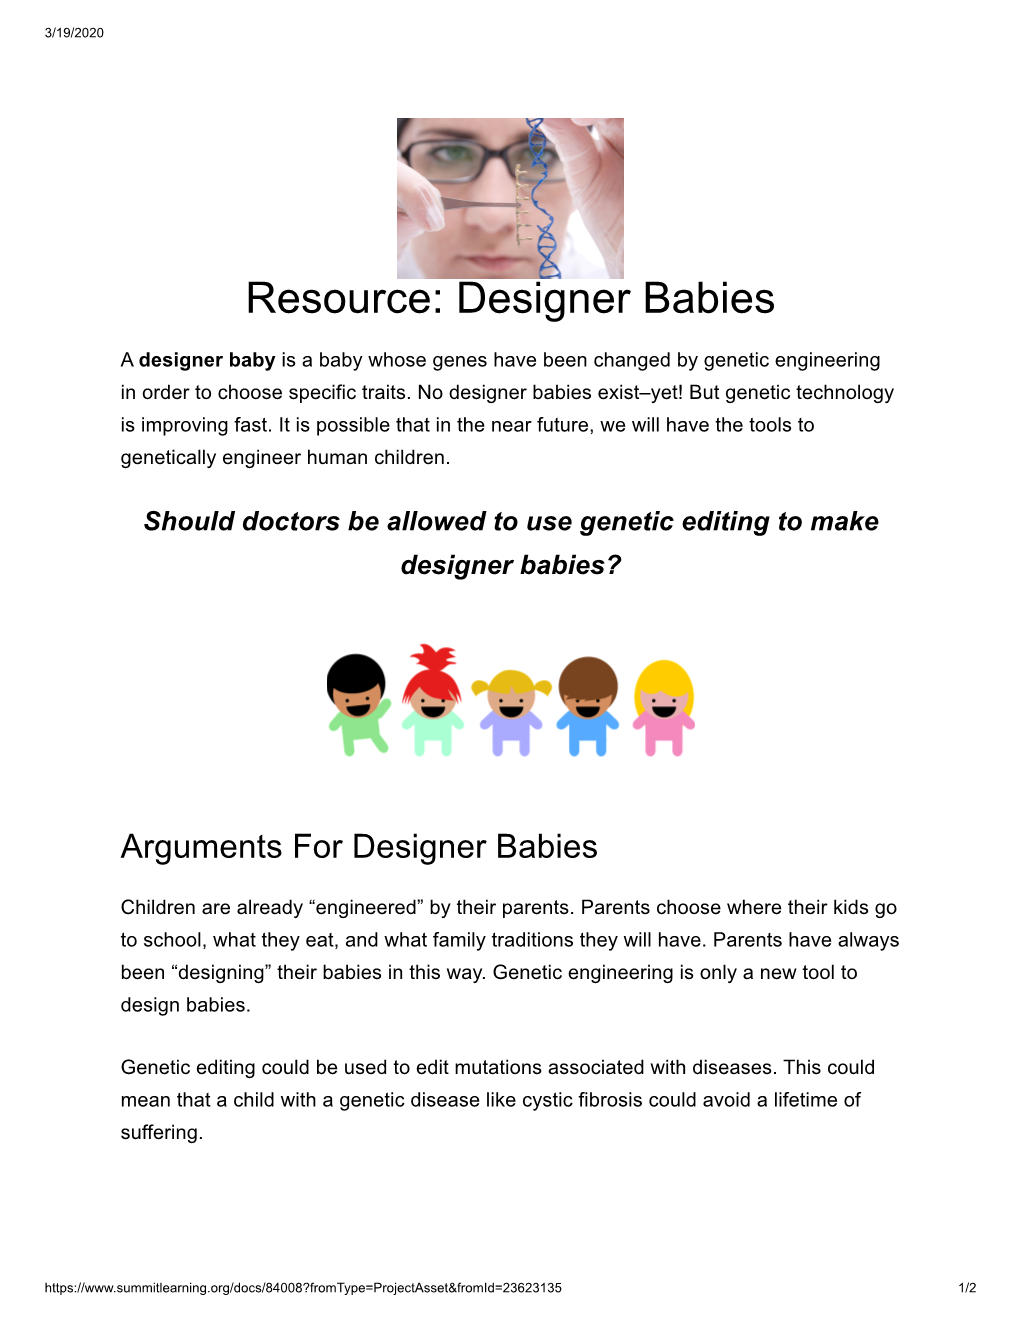 Resource: Designer Babies